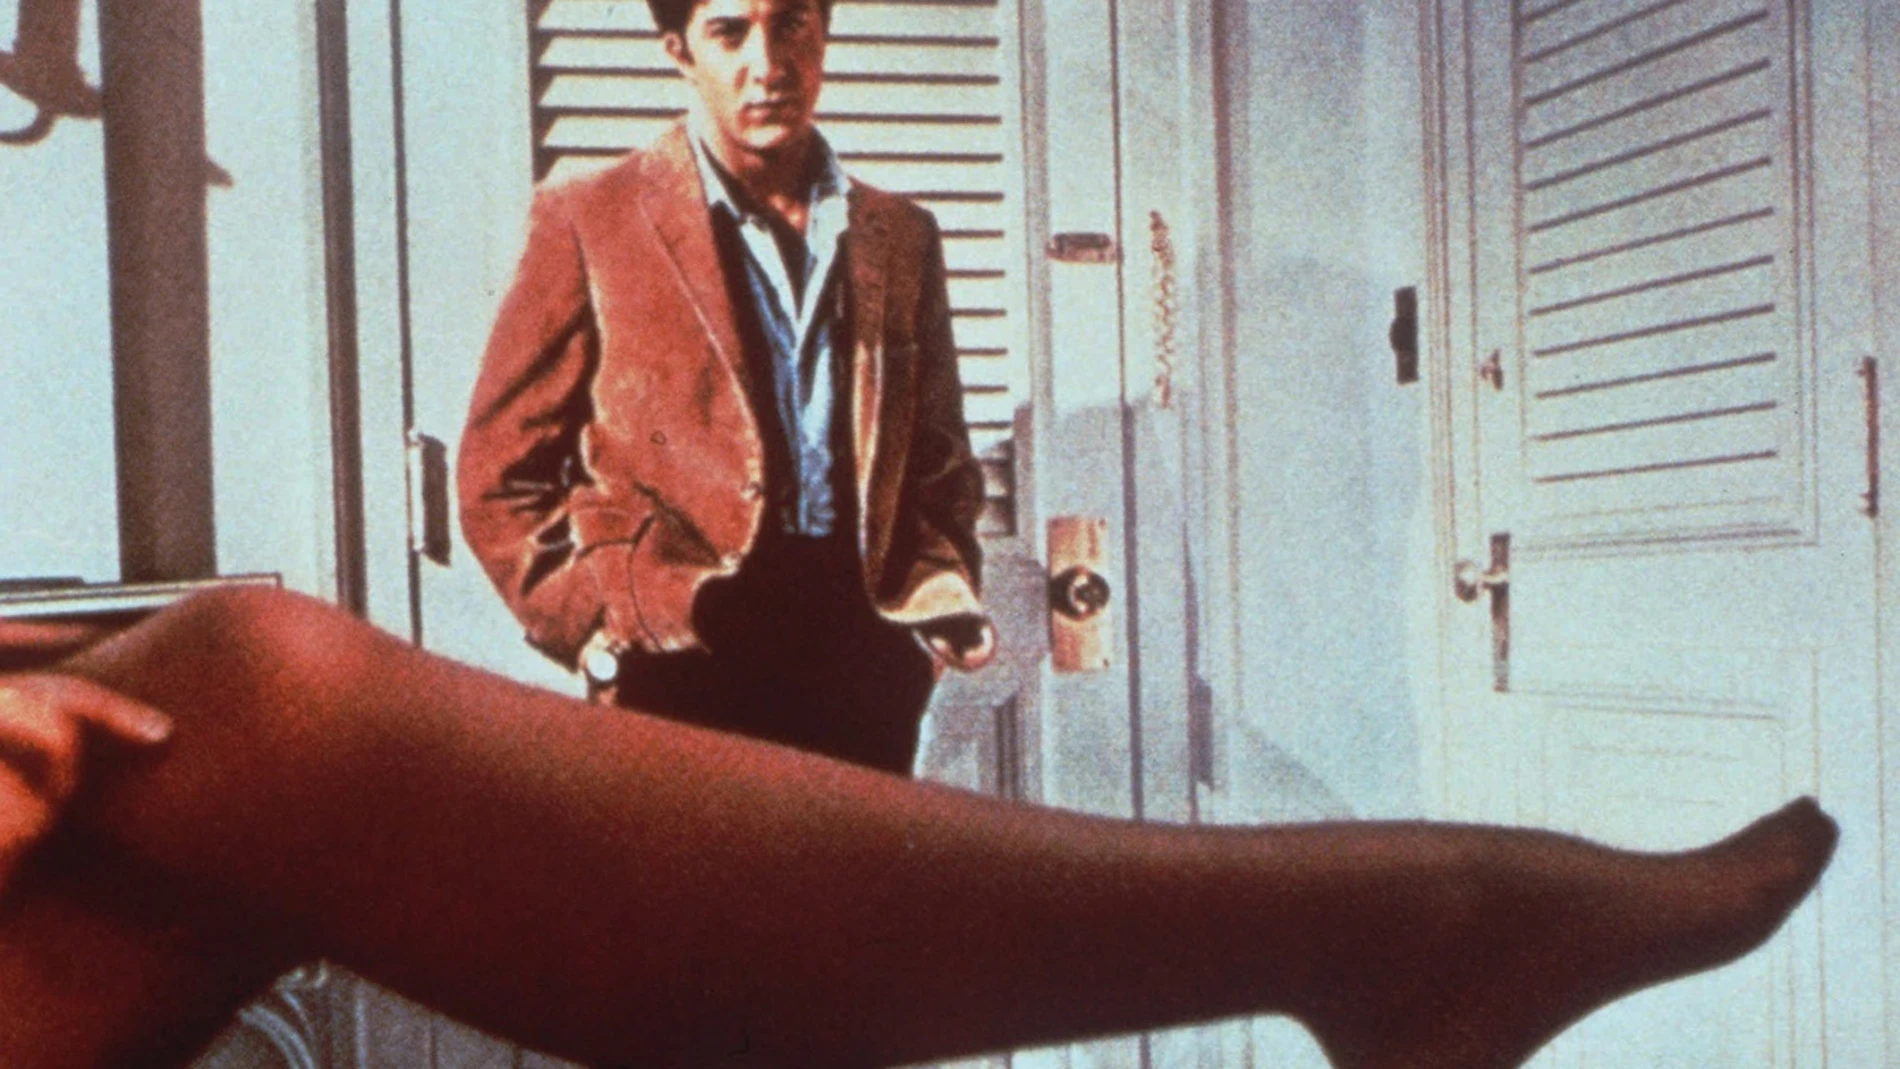 Dustin Hoffman y la pierna de Anne Bancroft, imagen icónica de los 60